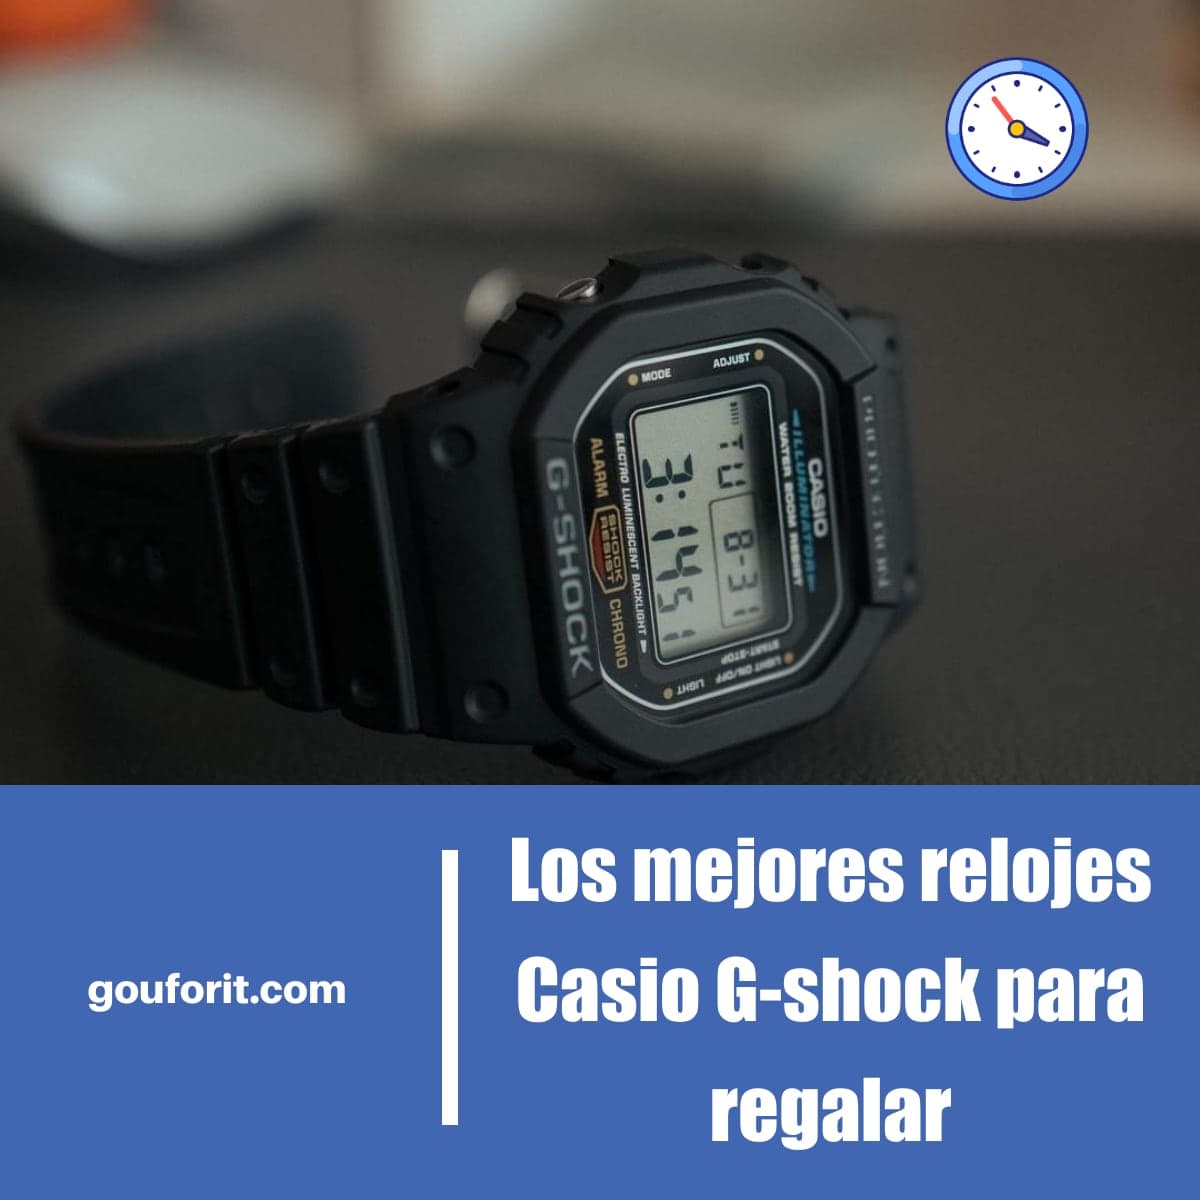 Los mejores relojes Casio G-shock para regalar